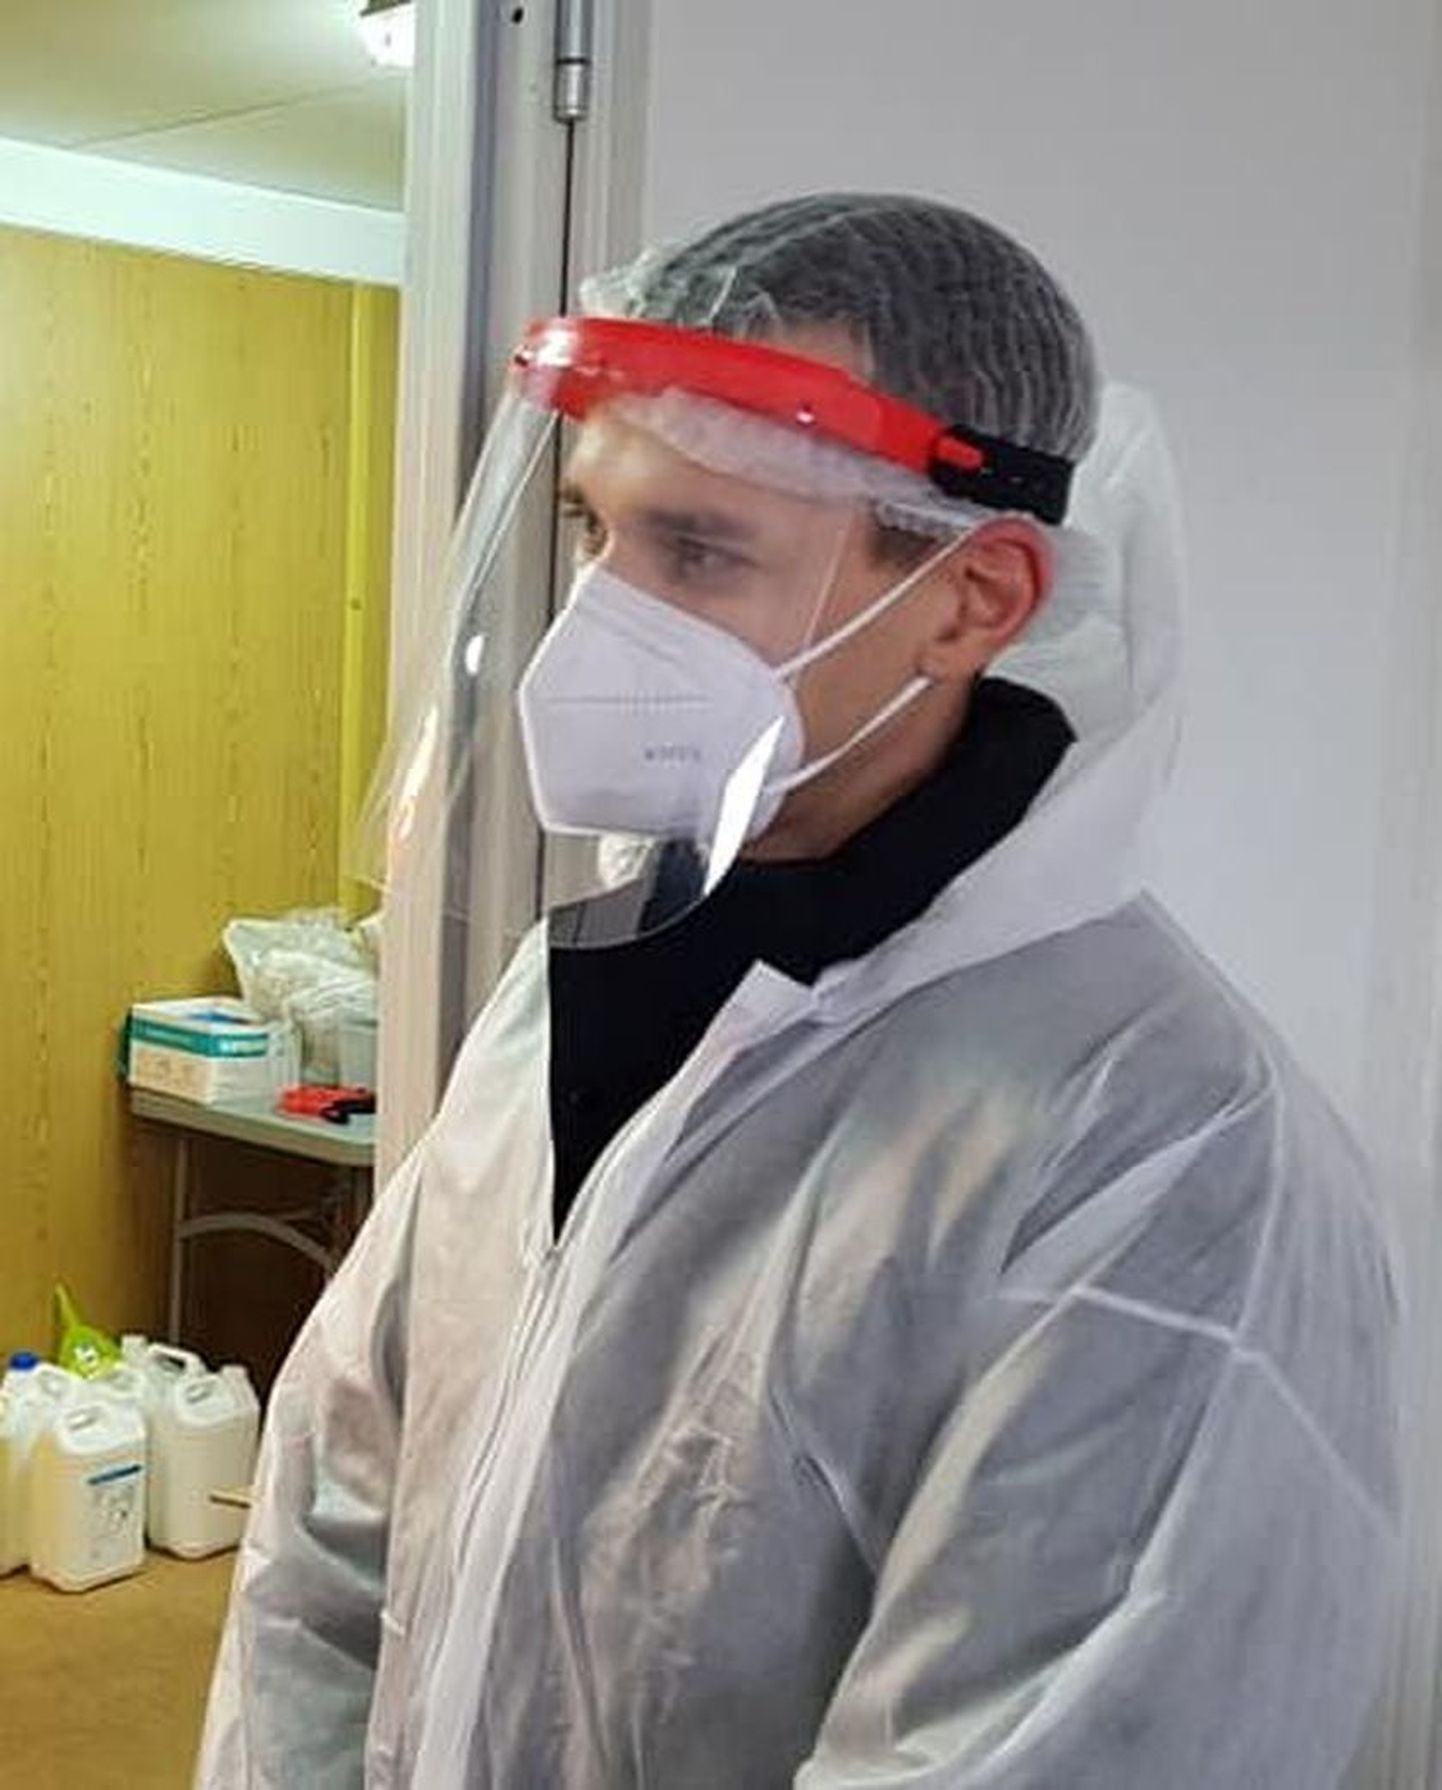 Виктор работает на пунктах взятия проб на коронавирус с марта 2020 года.